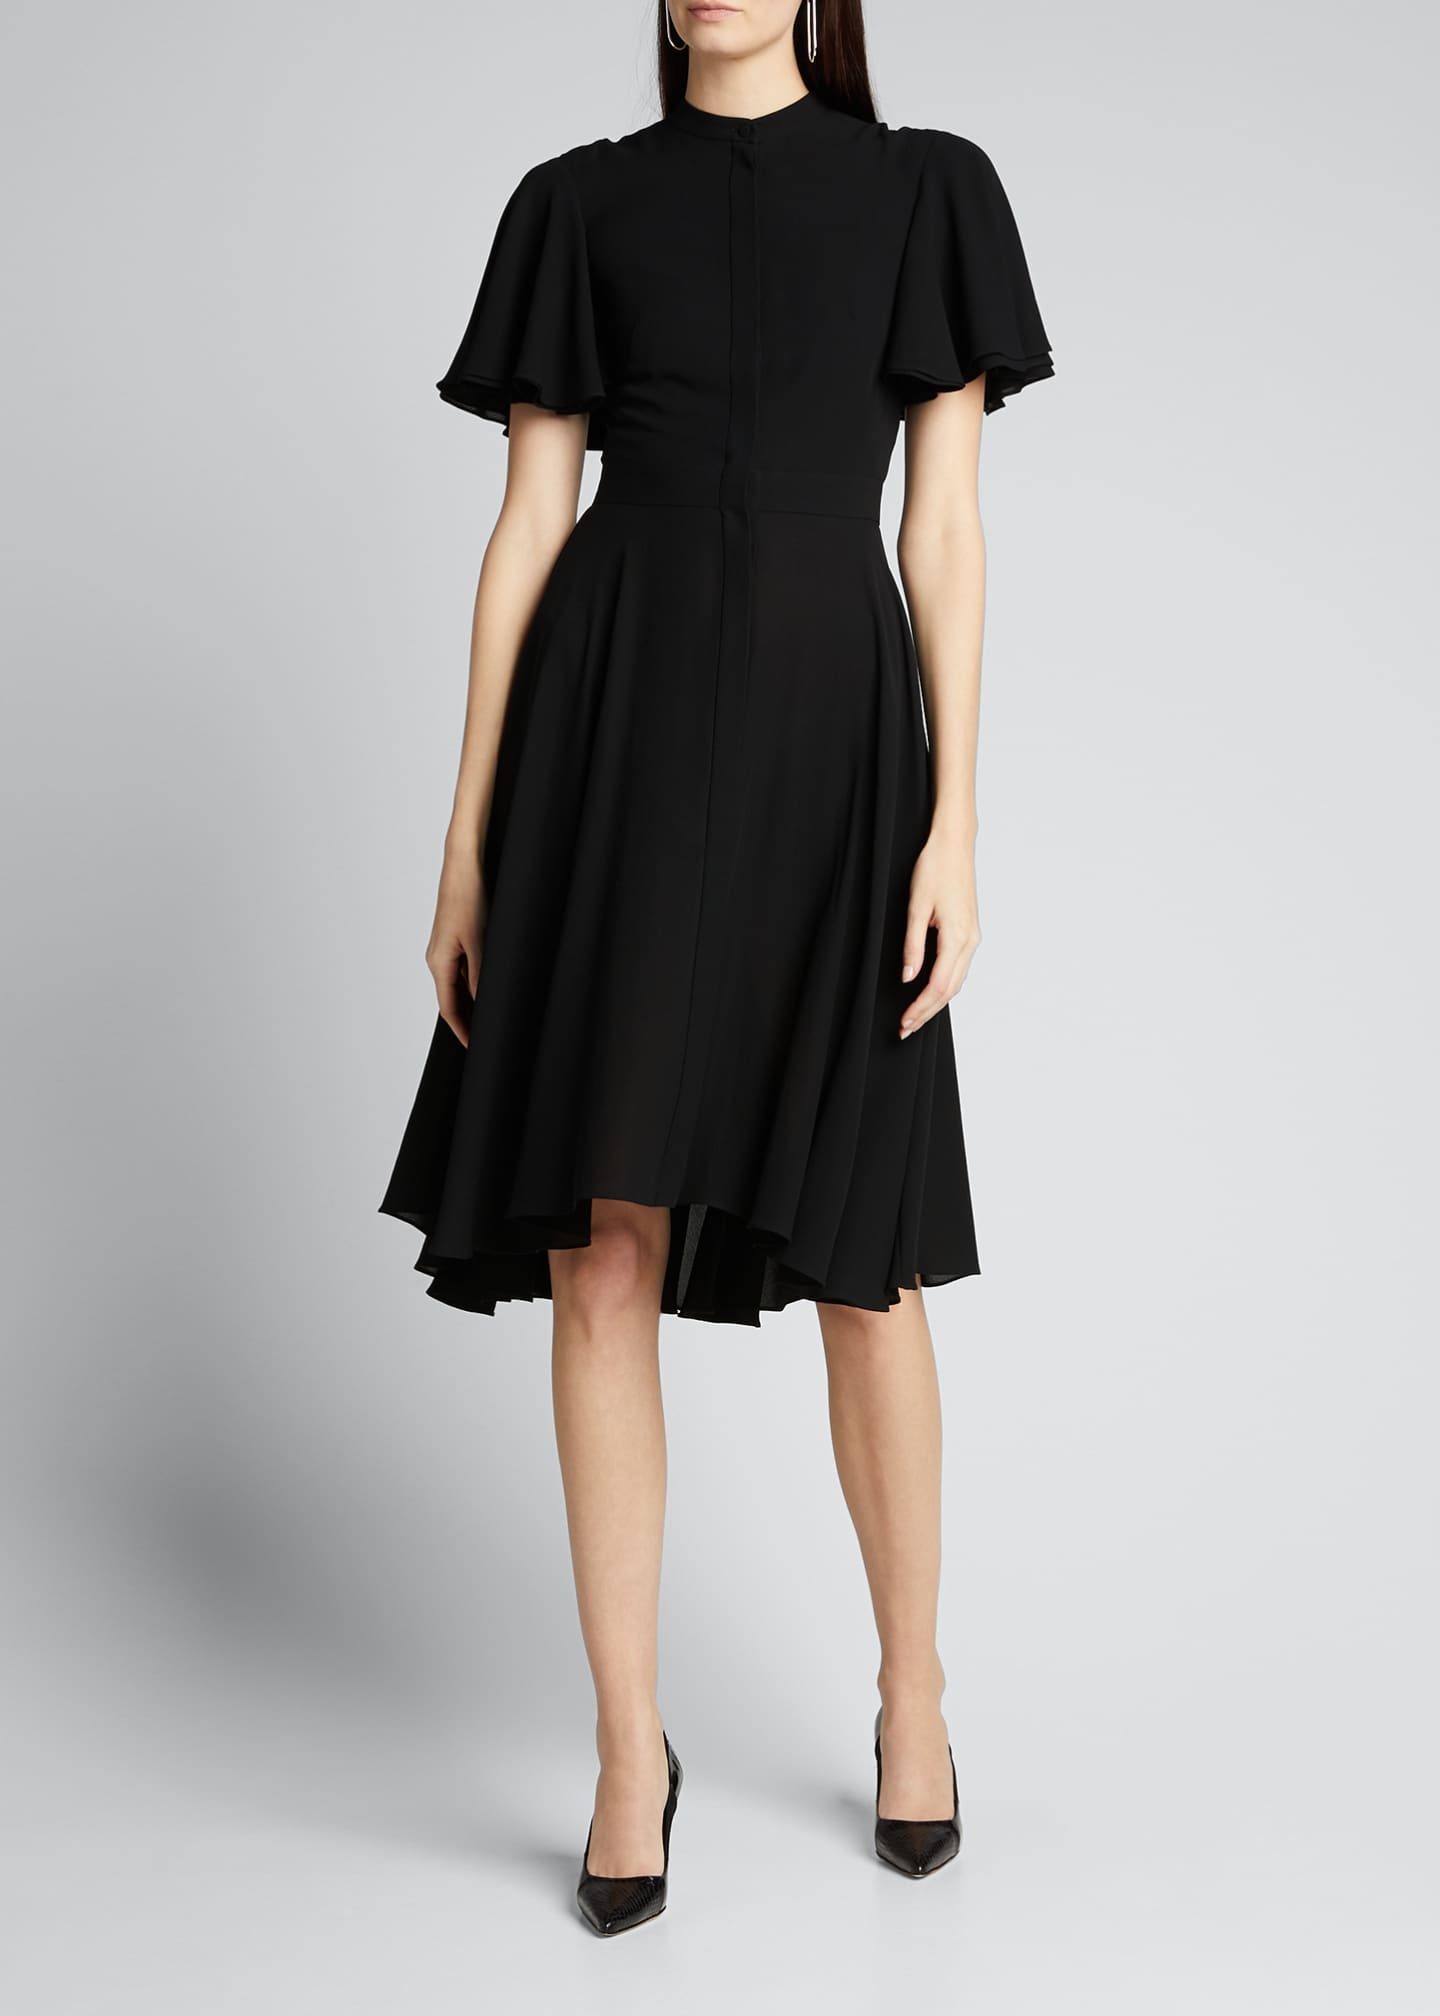 Alexander McQueen Georgette Flutter-Sleeve Silk Dress - Bergdorf Goodman